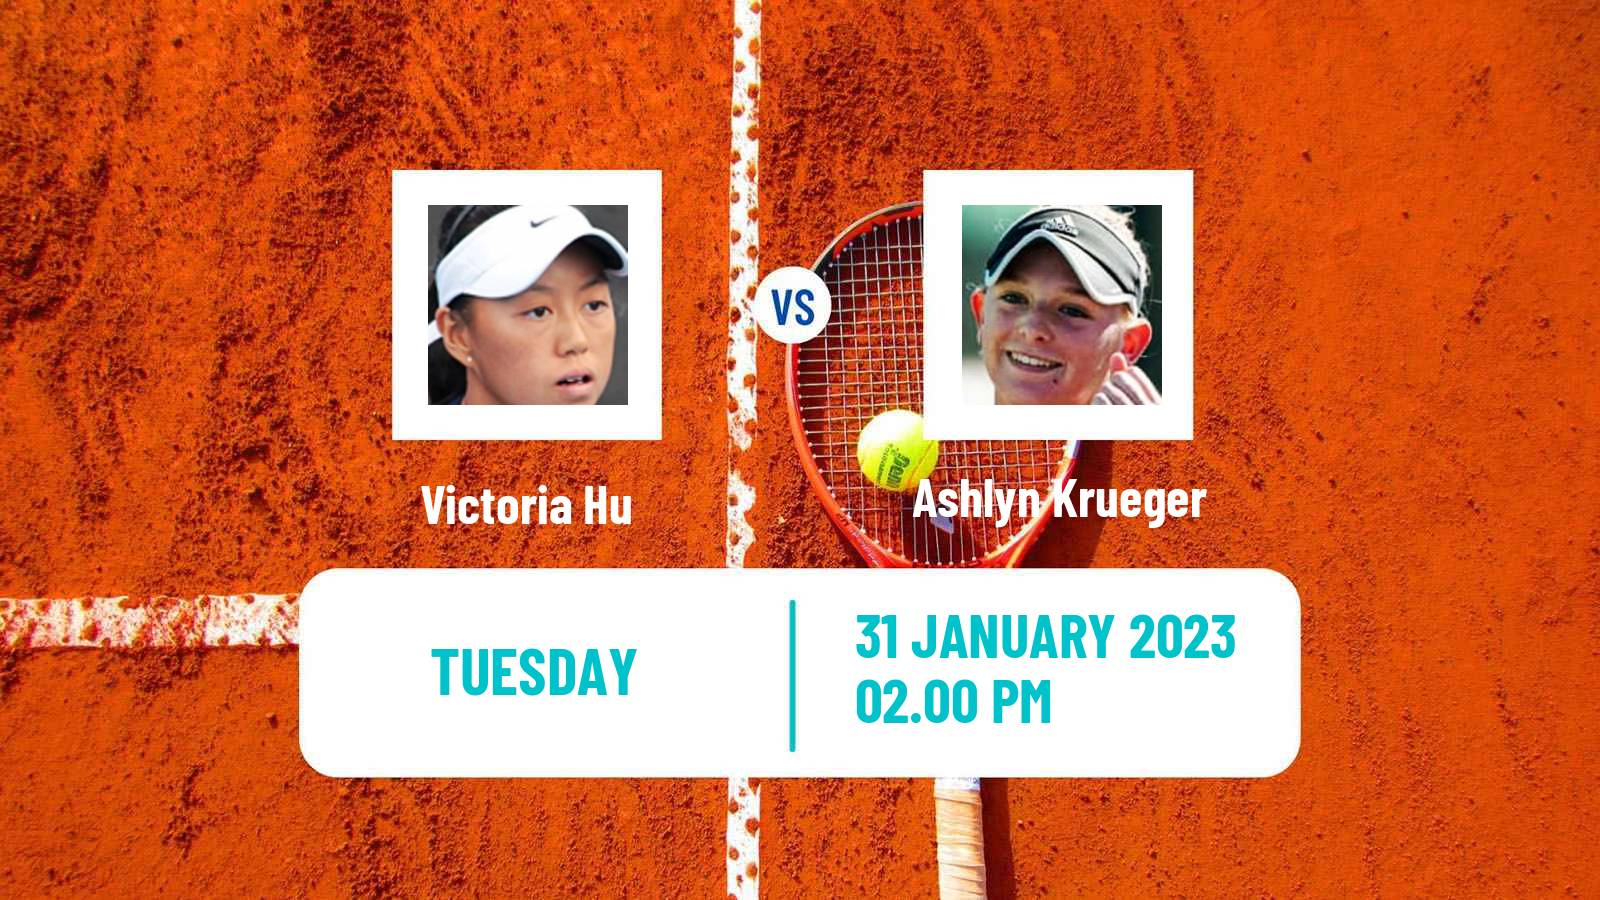 Tennis ITF Tournaments Victoria Hu - Ashlyn Krueger